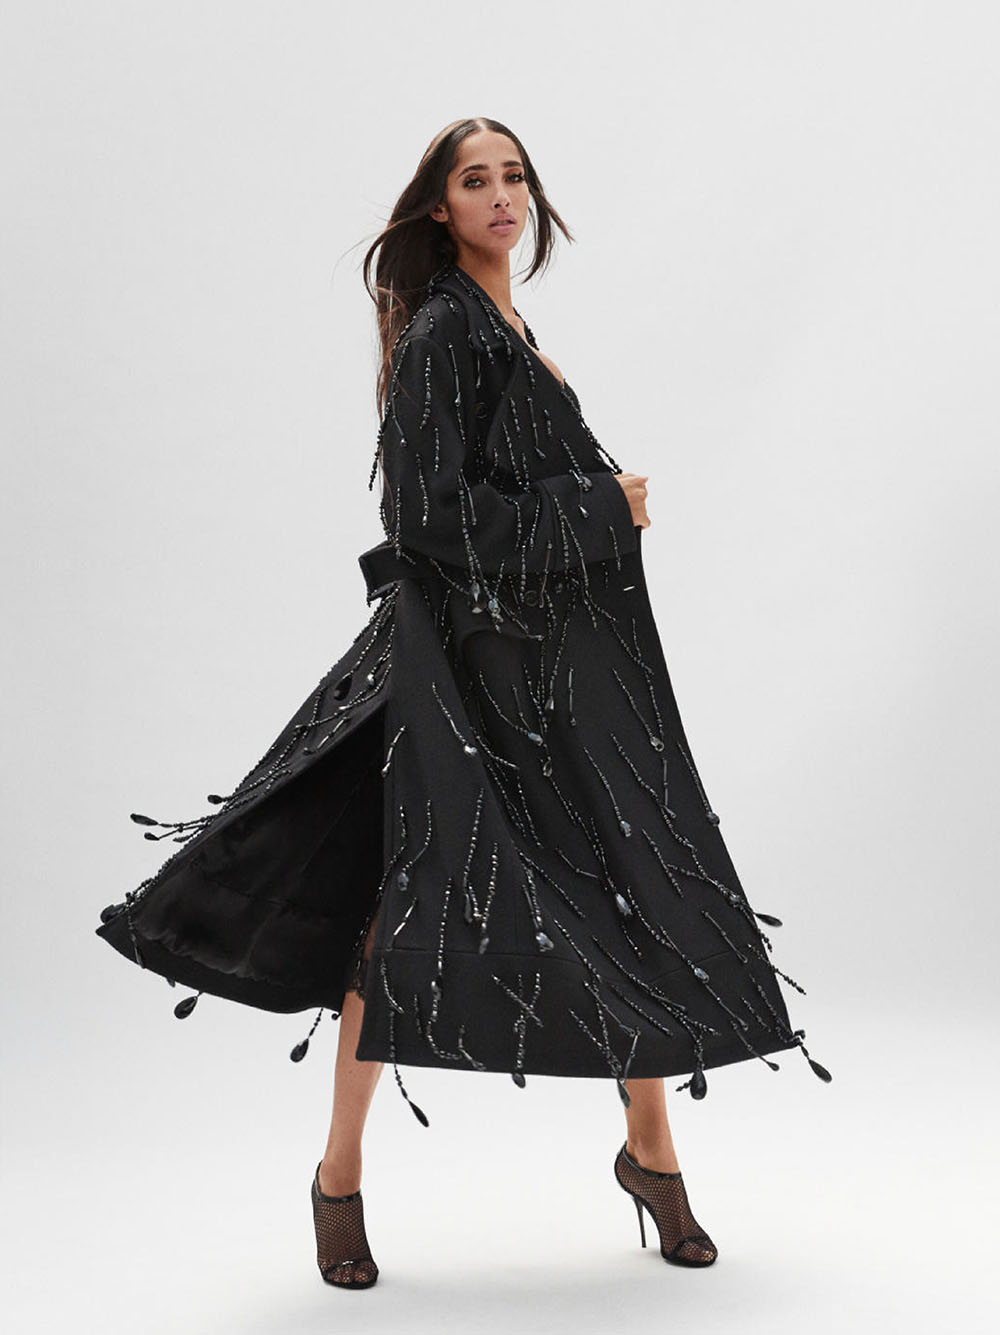 Yasmin Wijnaldum by Emmanuel Sanchez-Monsalve for Harper’s Bazaar US October 2020